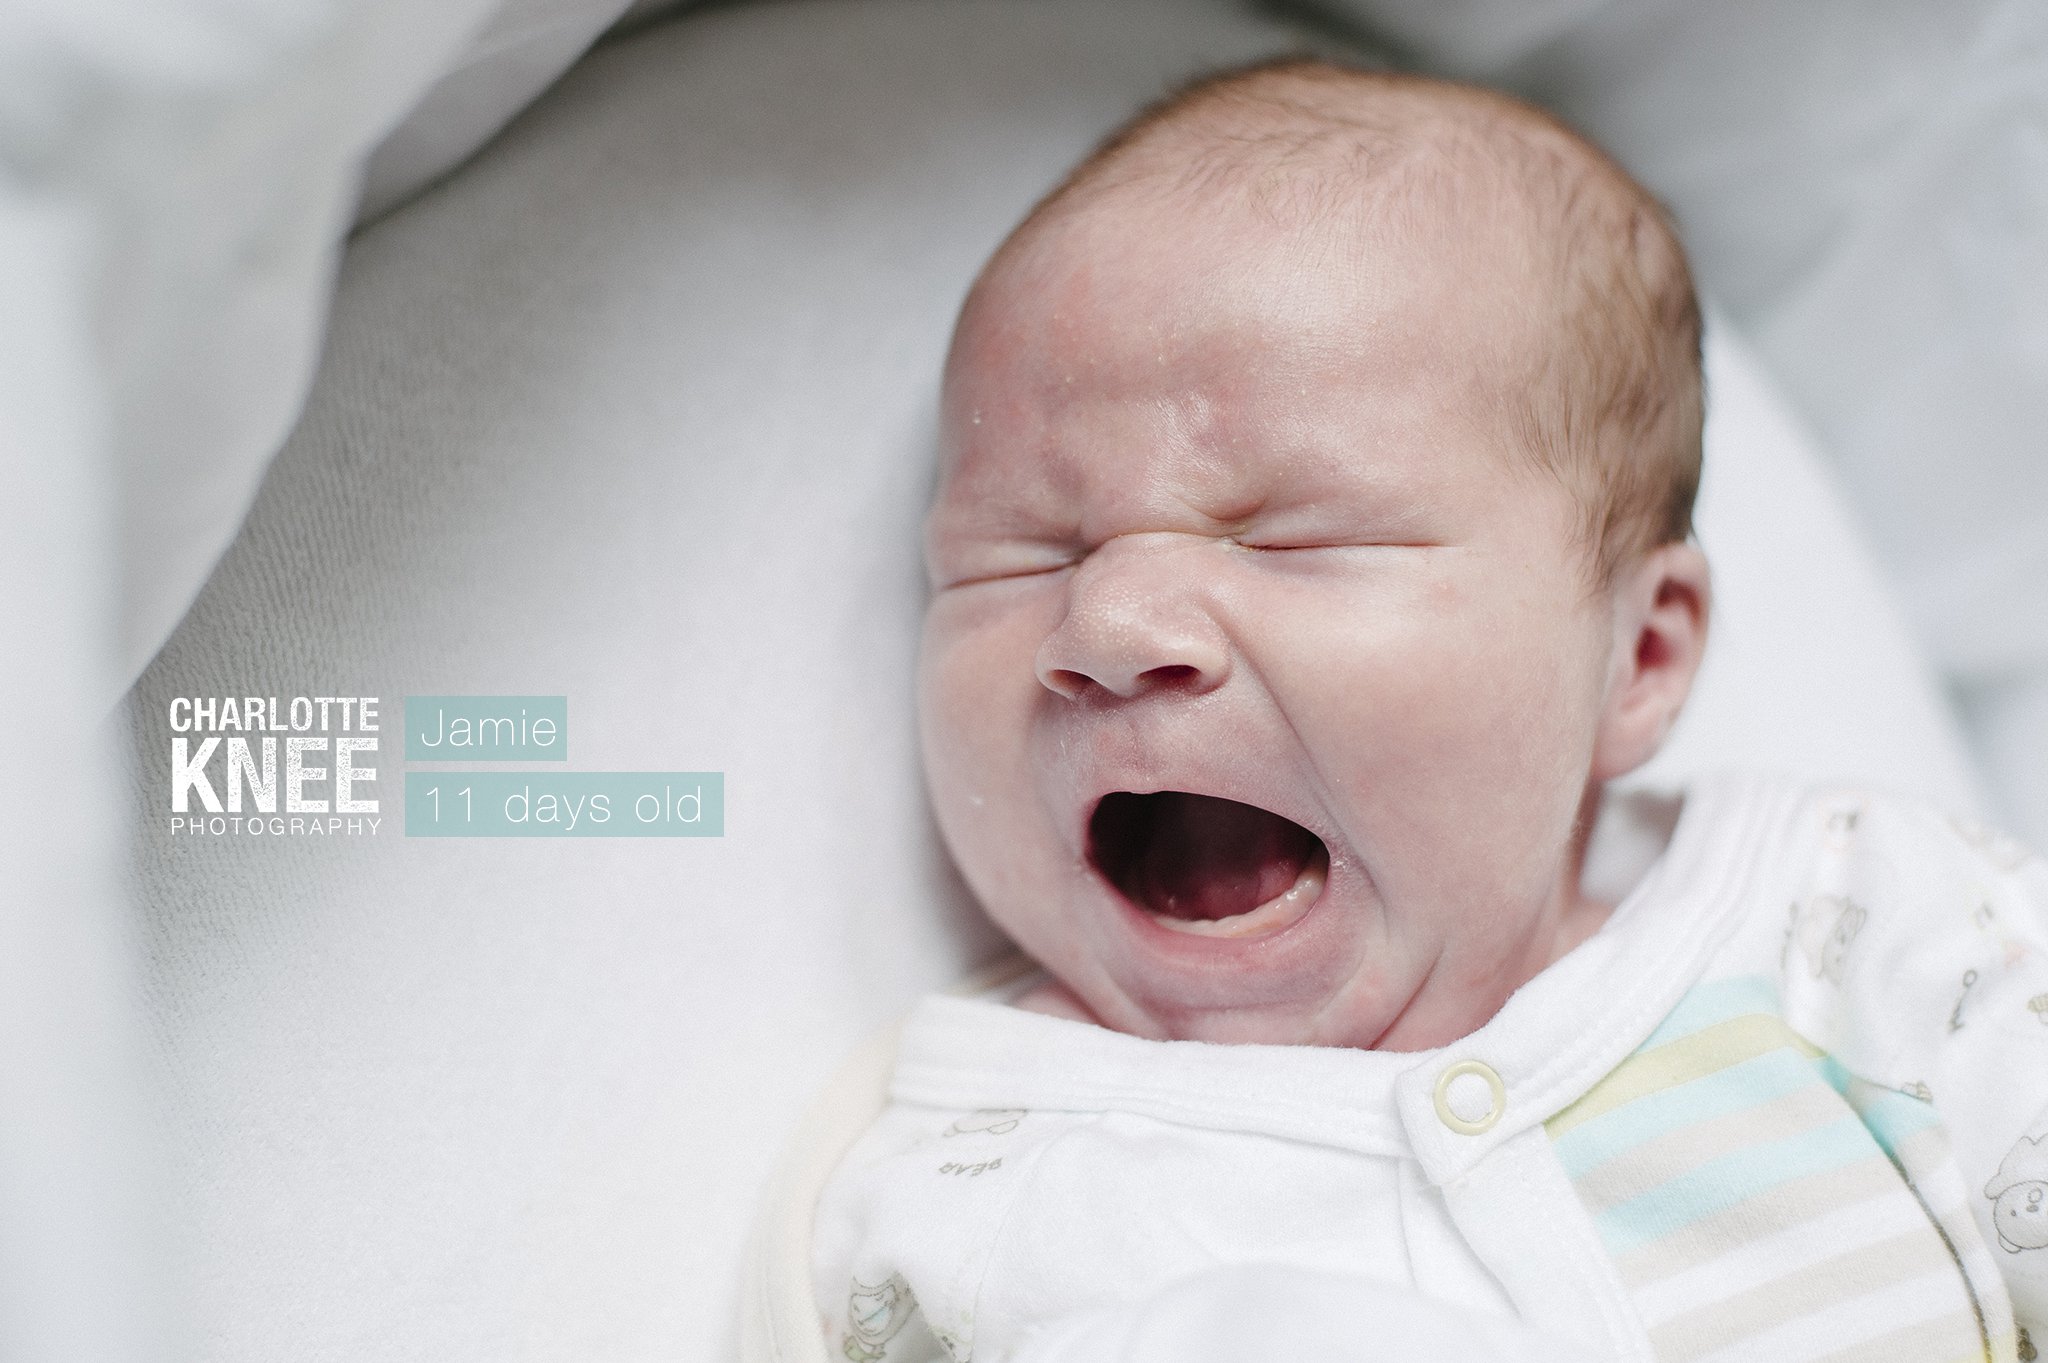 Newborn-Photography-Baby-Jamie-Charlotte-Knee-Photography_0001.jpg